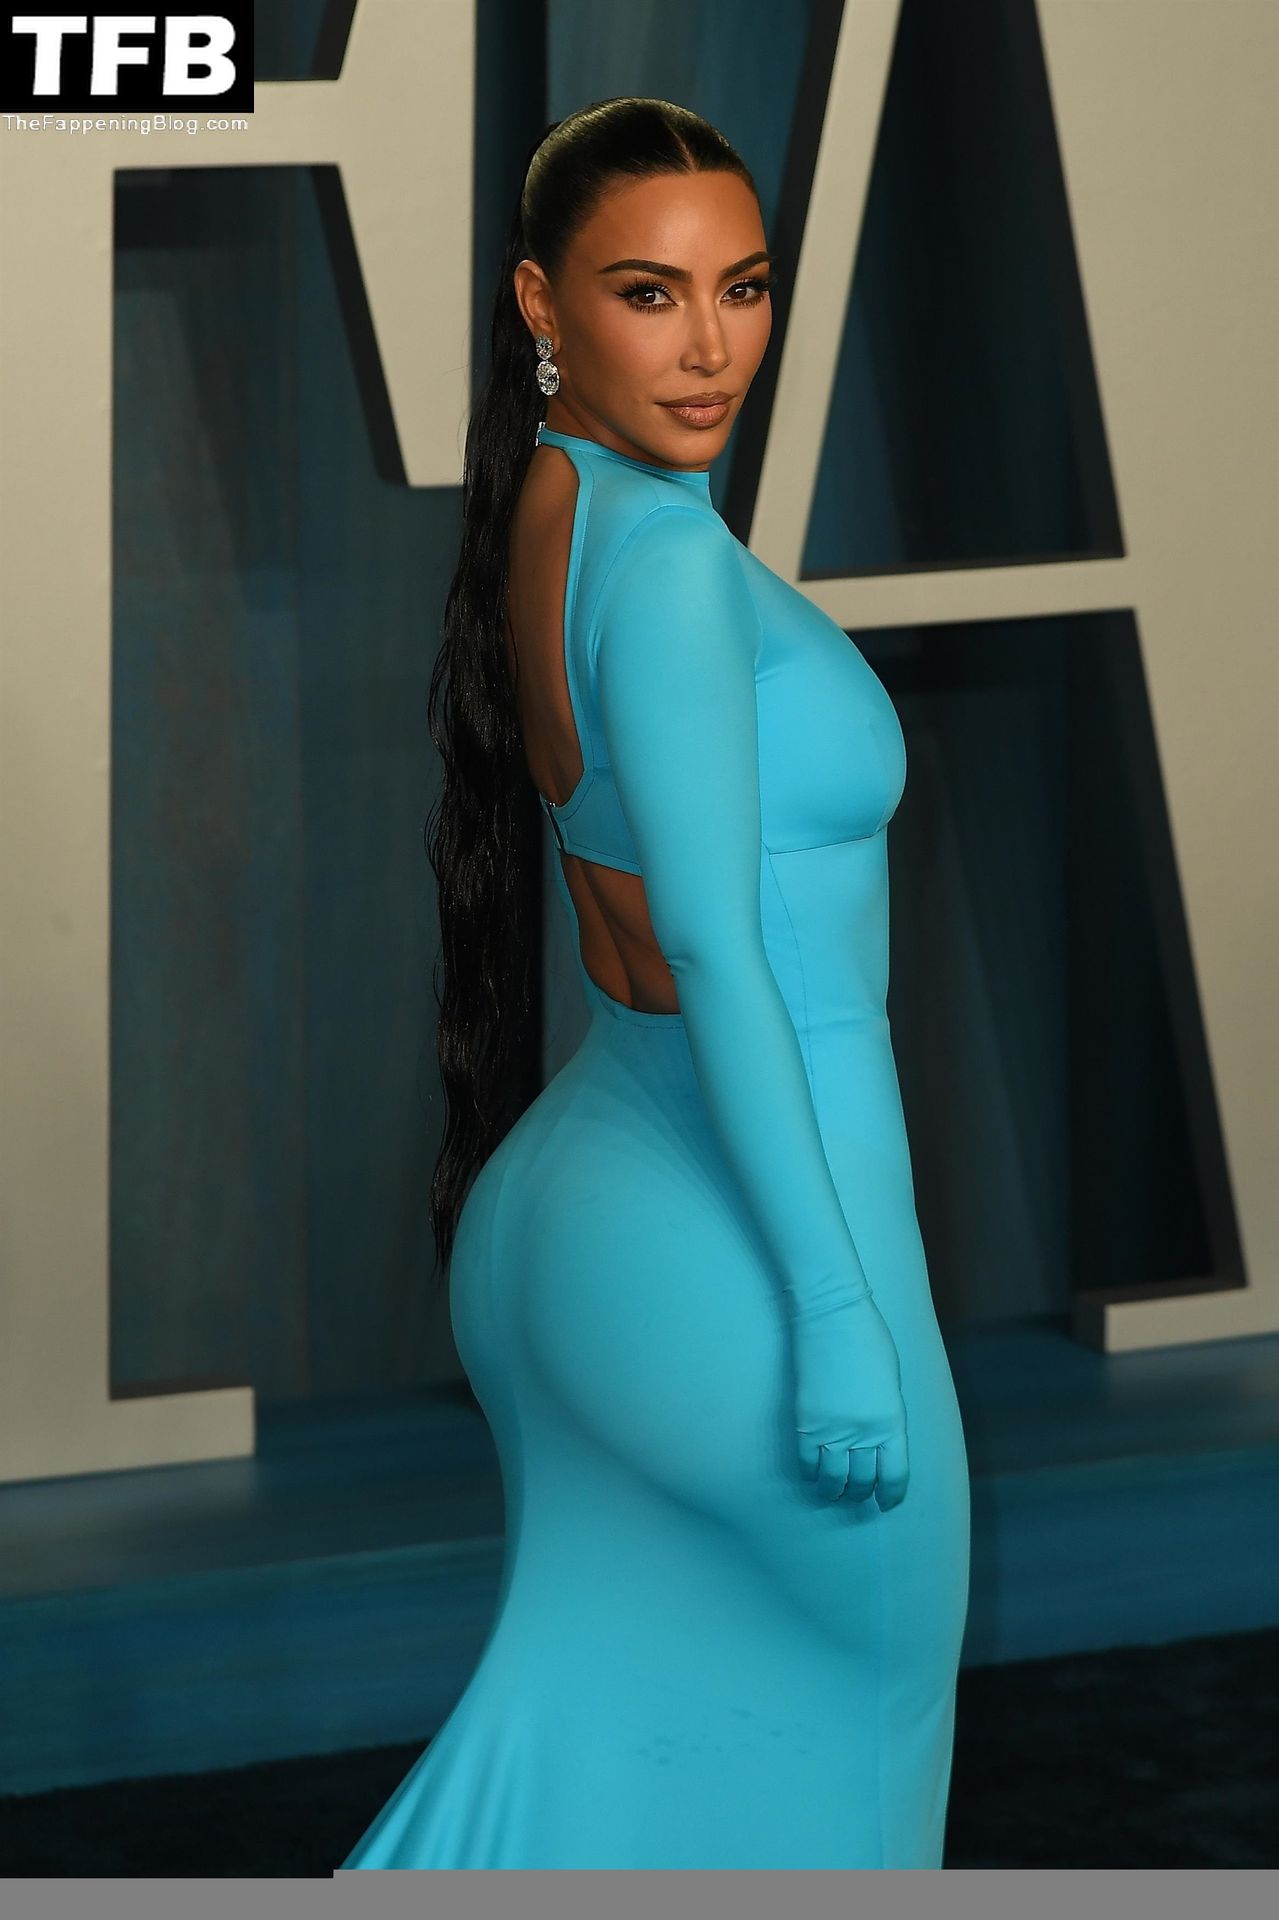 Kim-Kardashian-Sexy-The-Fappening-Blog-28-1.jpg